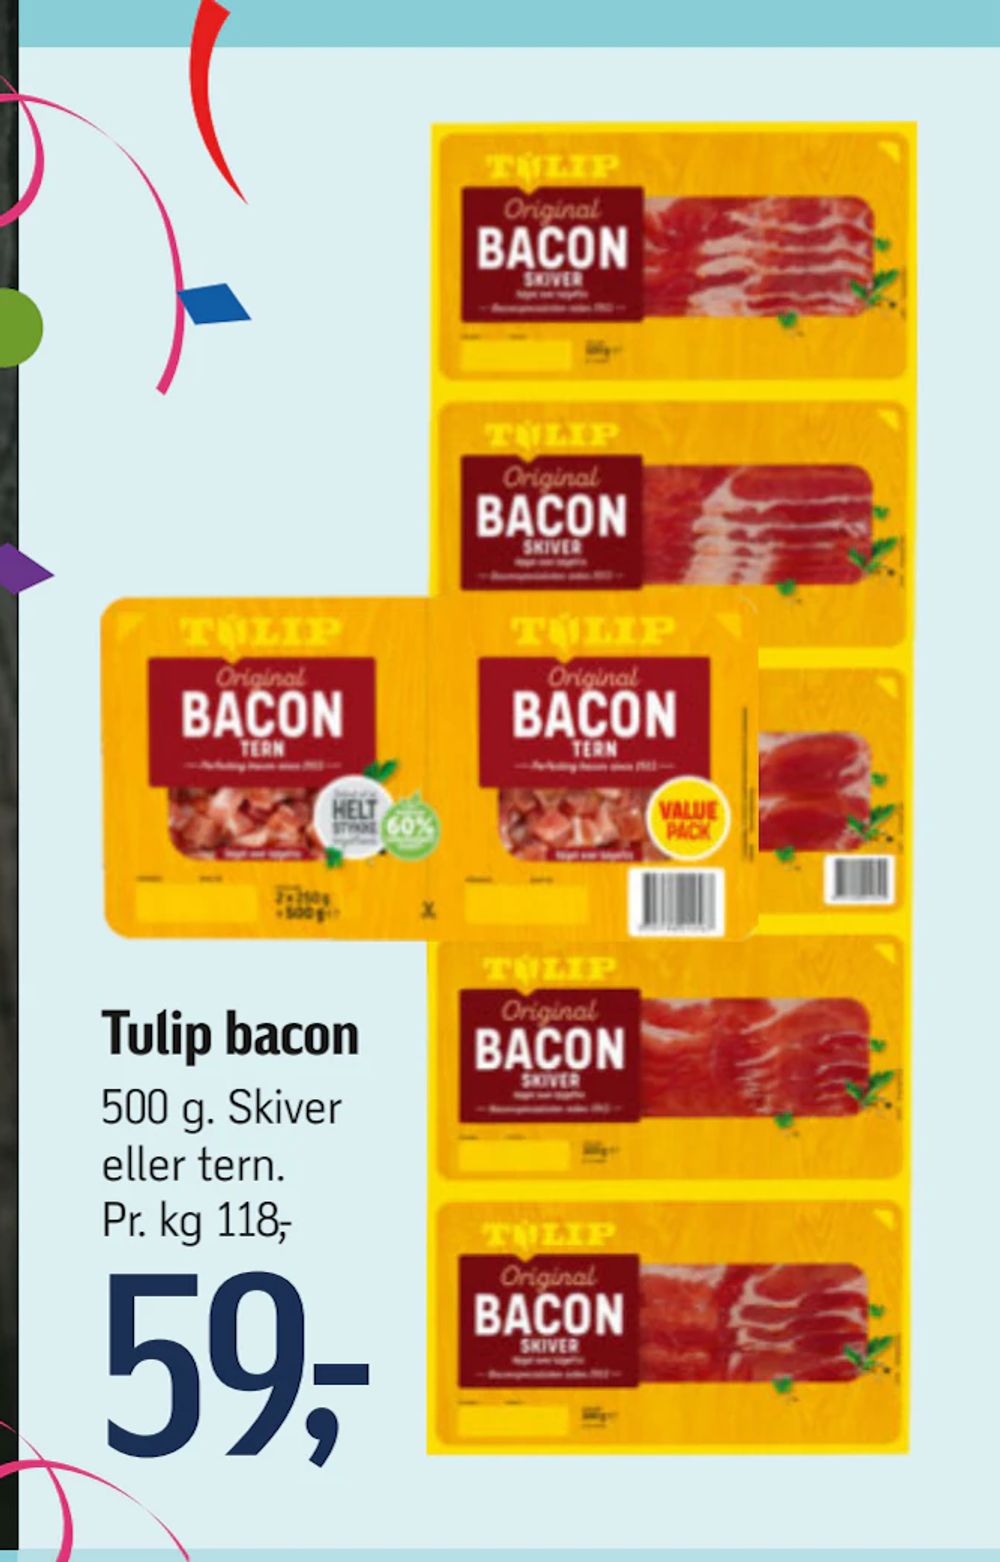 Tilbud på Tulip bacon fra føtex til 59 kr.